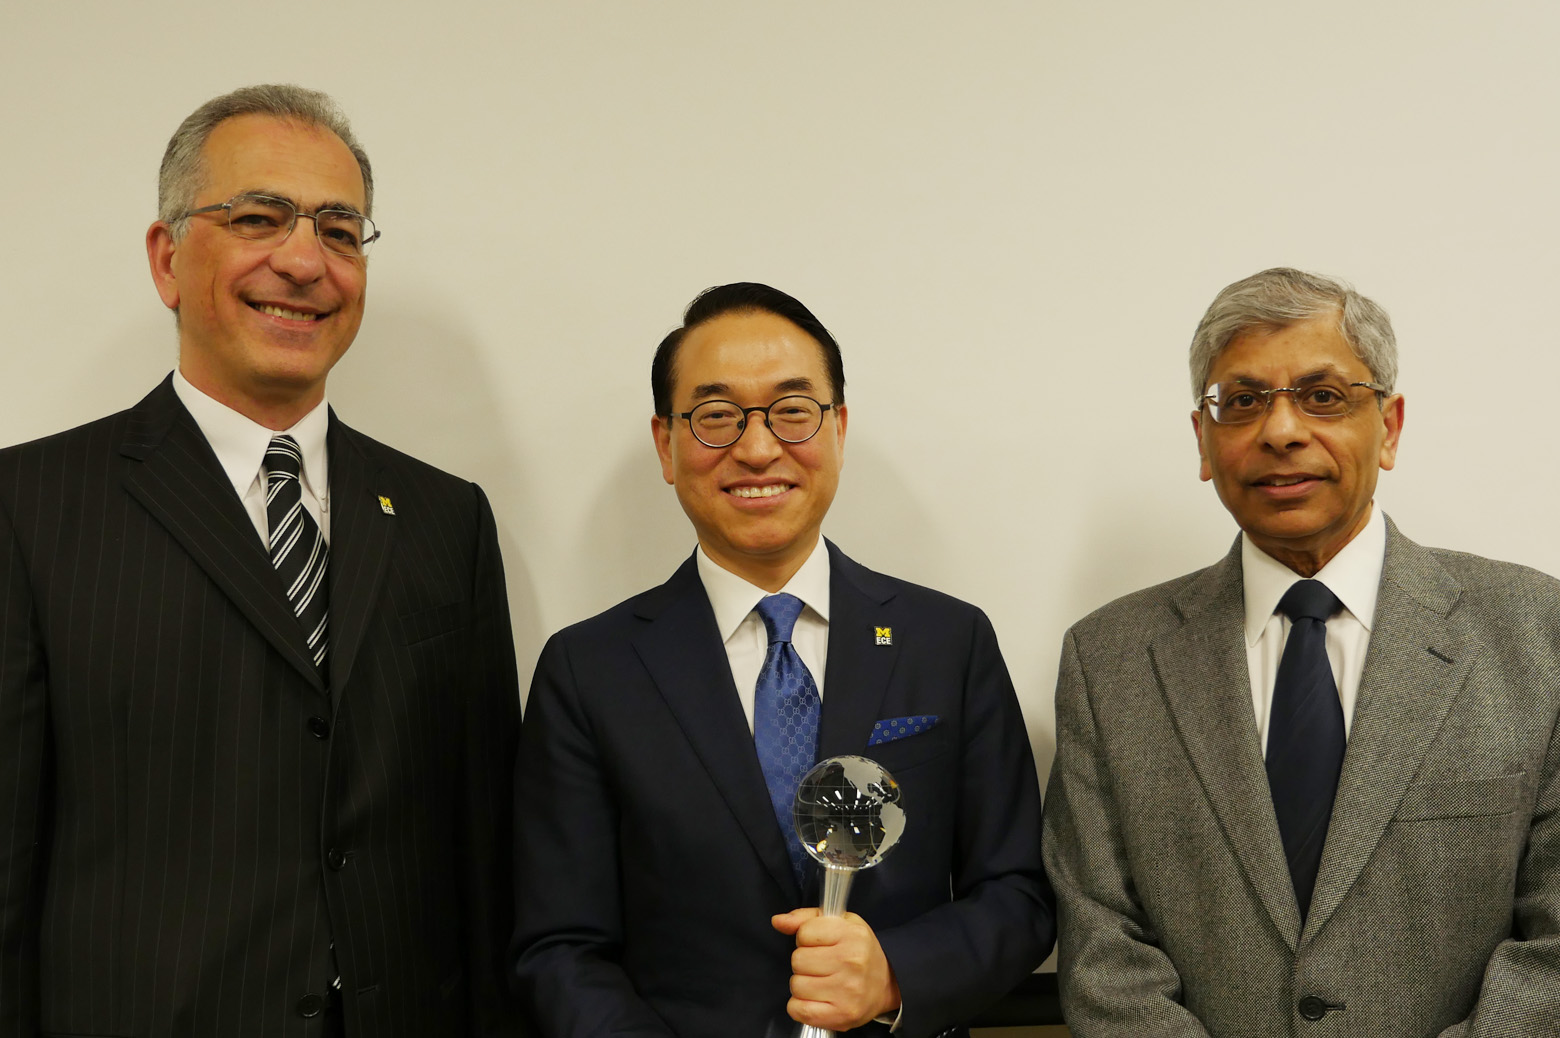 Won Pyo Hong Alumni Award